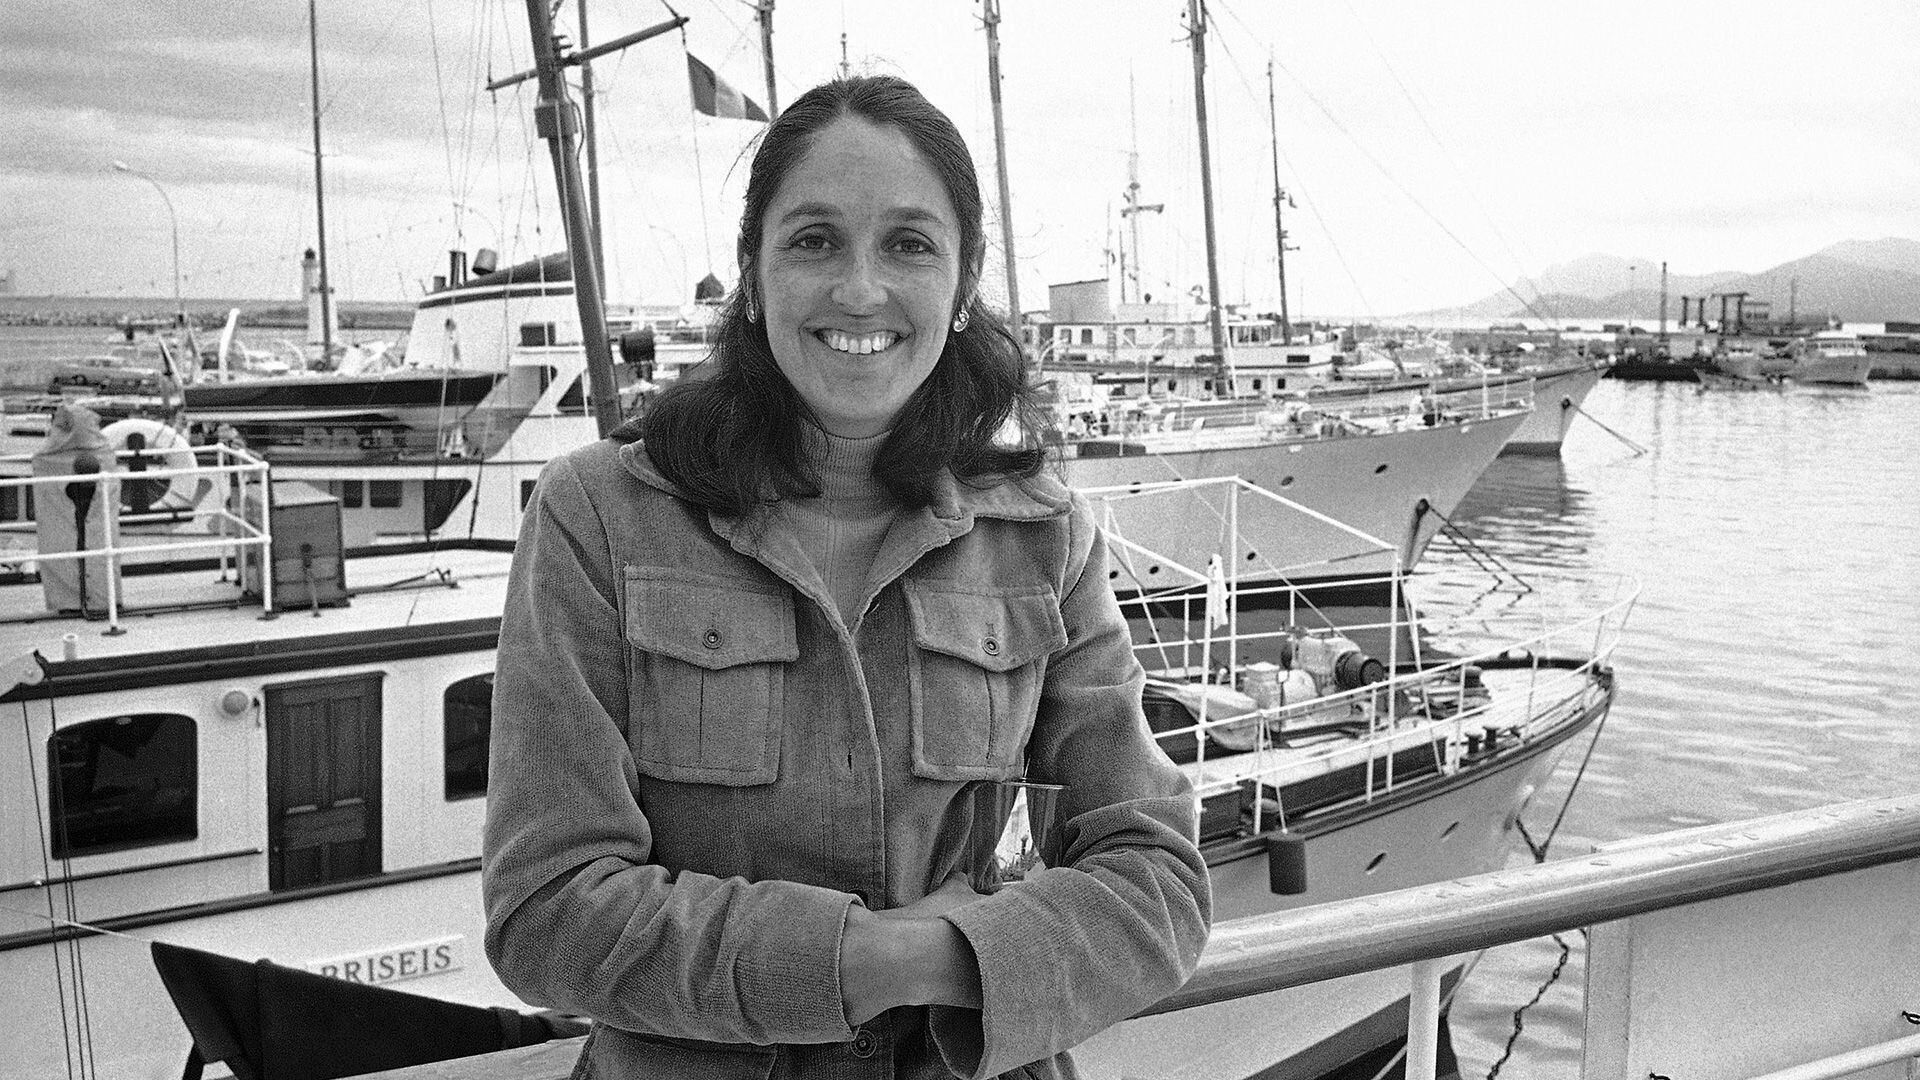 La cantante folk estadounidense Joan Baez, autora de la balada de la película italiana "Sacco e Vanzetti", aparece en una foto junto al puerto de Cannes, Francia, el 27 de mayo de 1971 (Foto de archivo: AP Photo/Michel Lipchitz, Archivo)